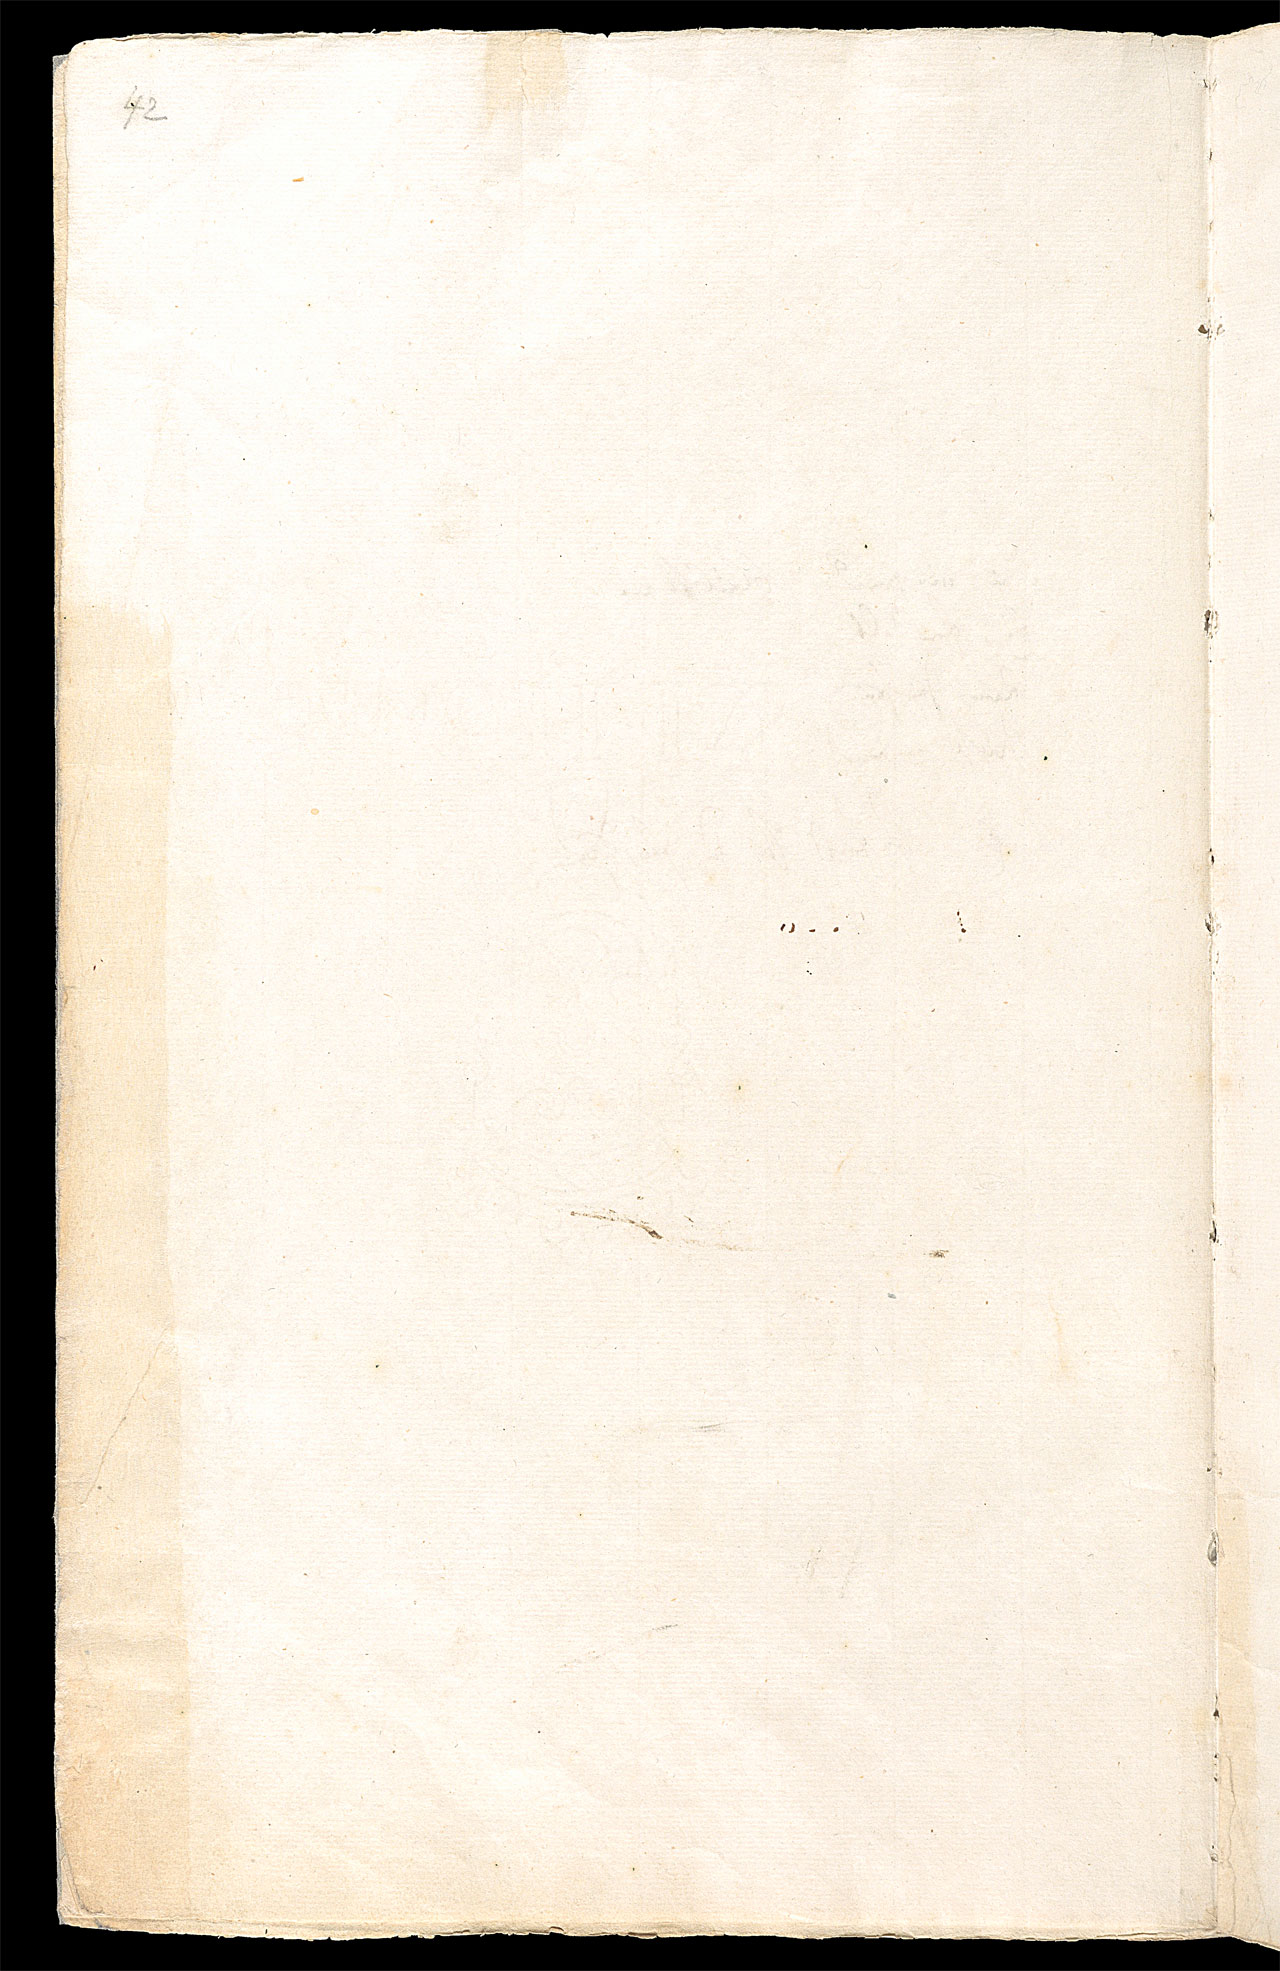 Friedrich Hölderlin, Homburger Folioheft, Seite 42, Handschrift